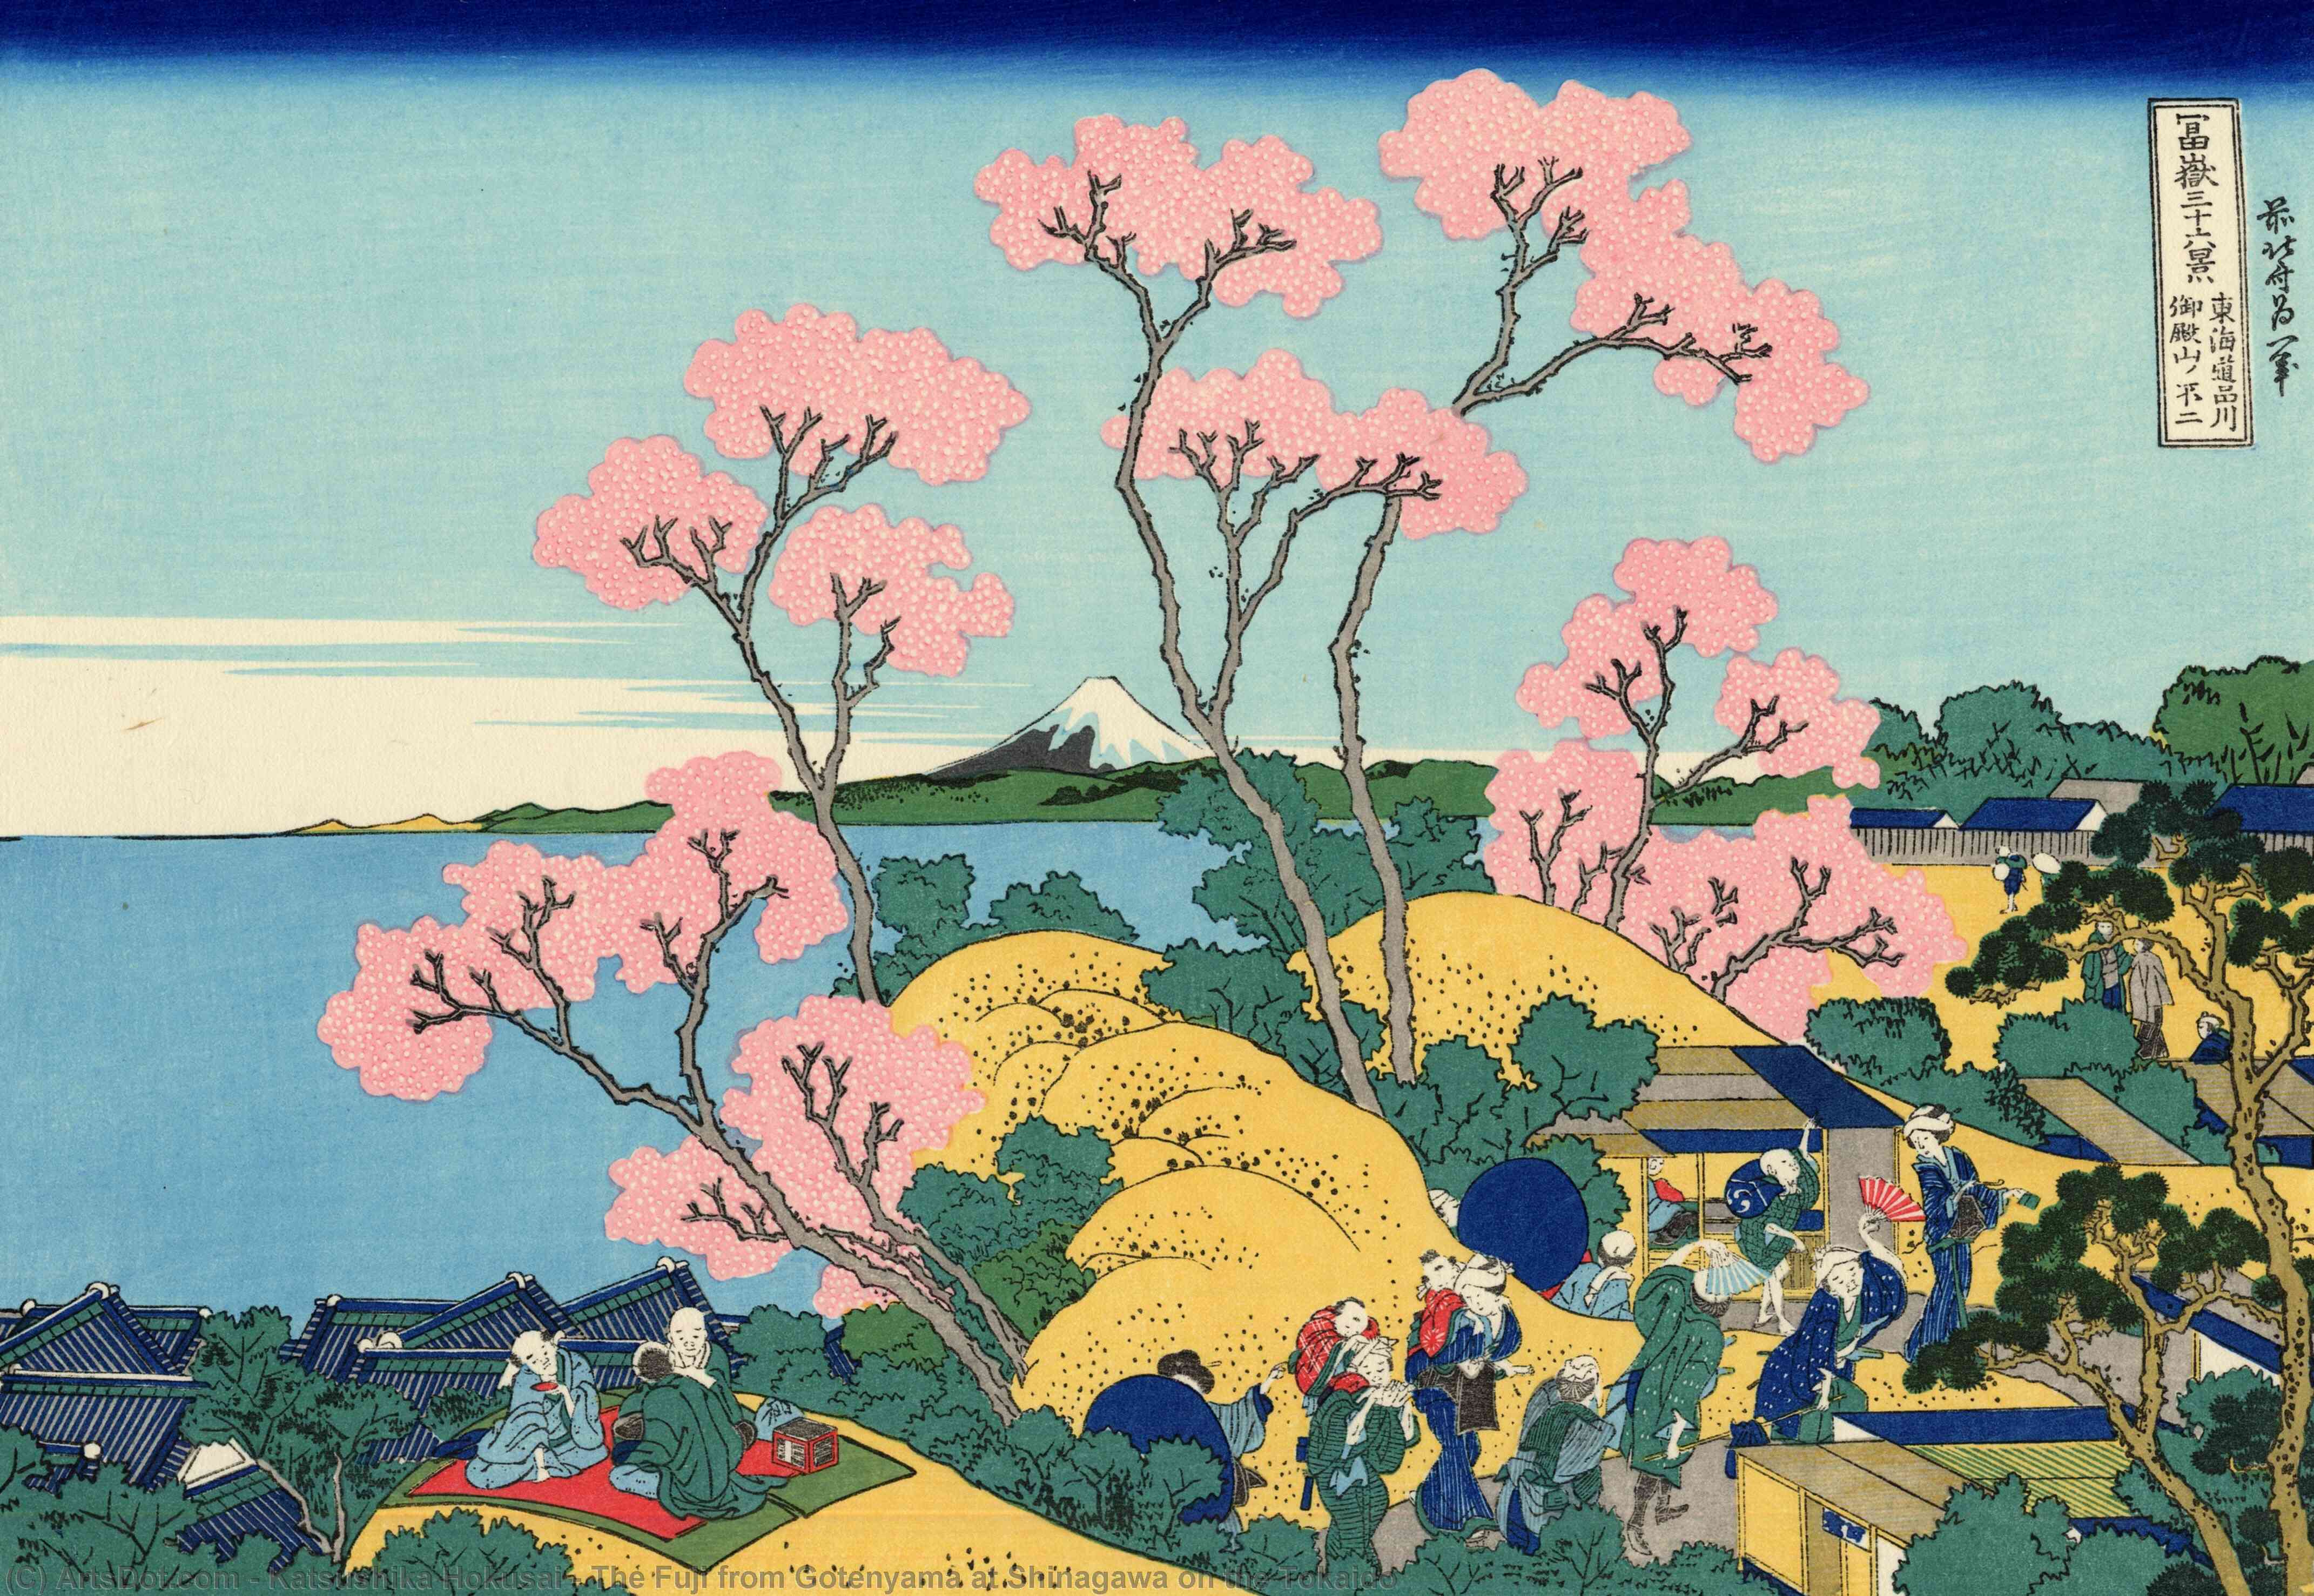 Order Oil Painting Replica The Fuji from Gotenyama at Shinagawa on the Tokaido by Katsushika Hokusai (1760-1849, Japan) | ArtsDot.com